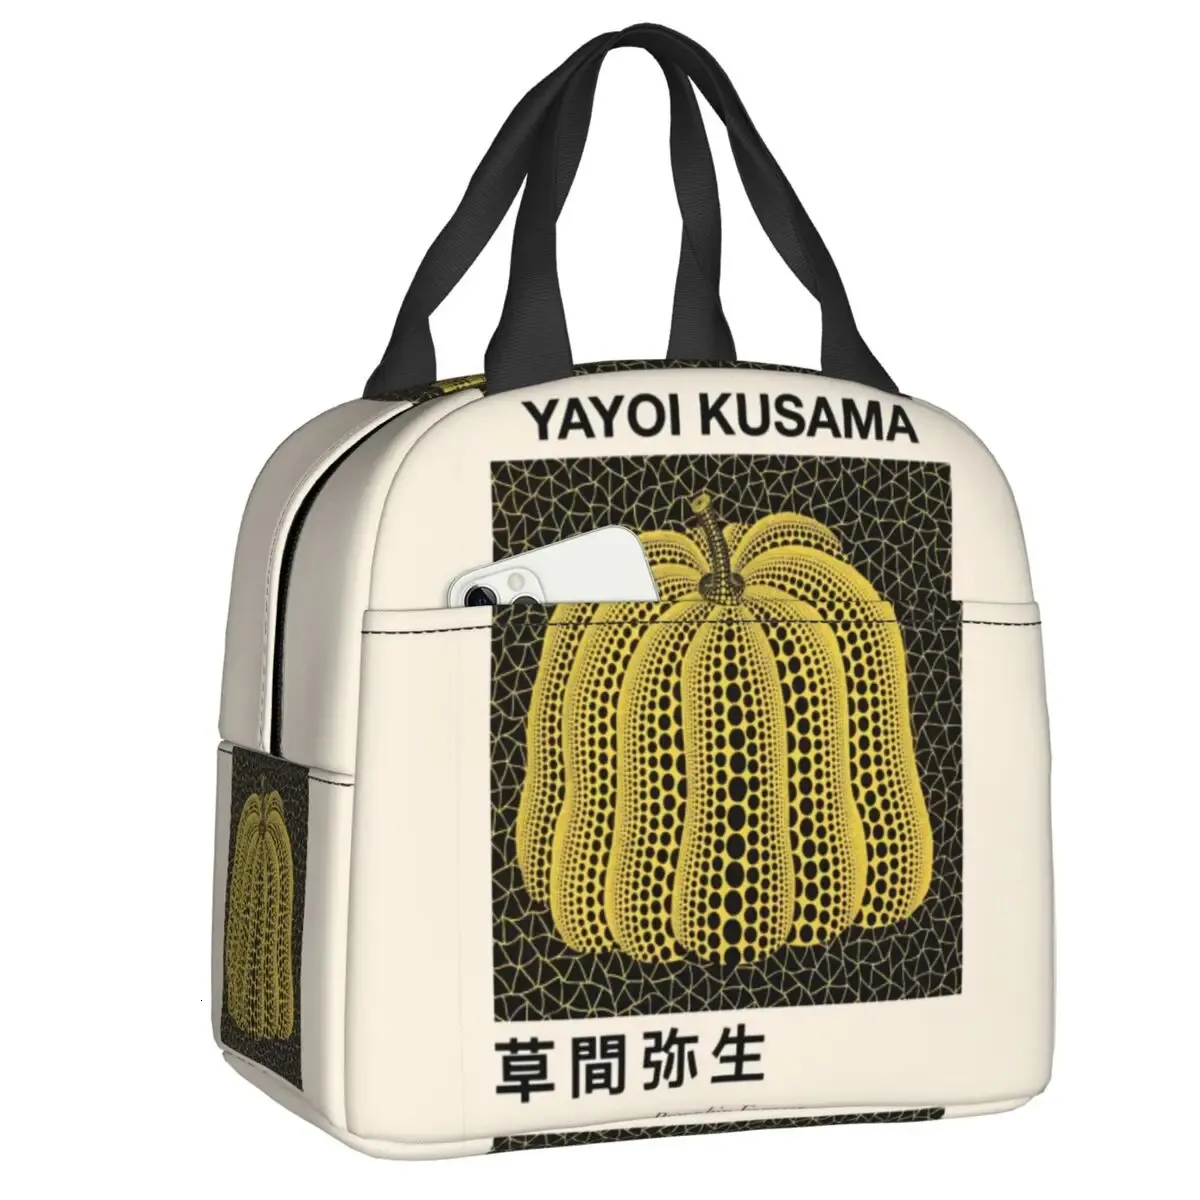 Yayoi Kusama Pumkin na zawsze izolowana torba na lunch do kempingu